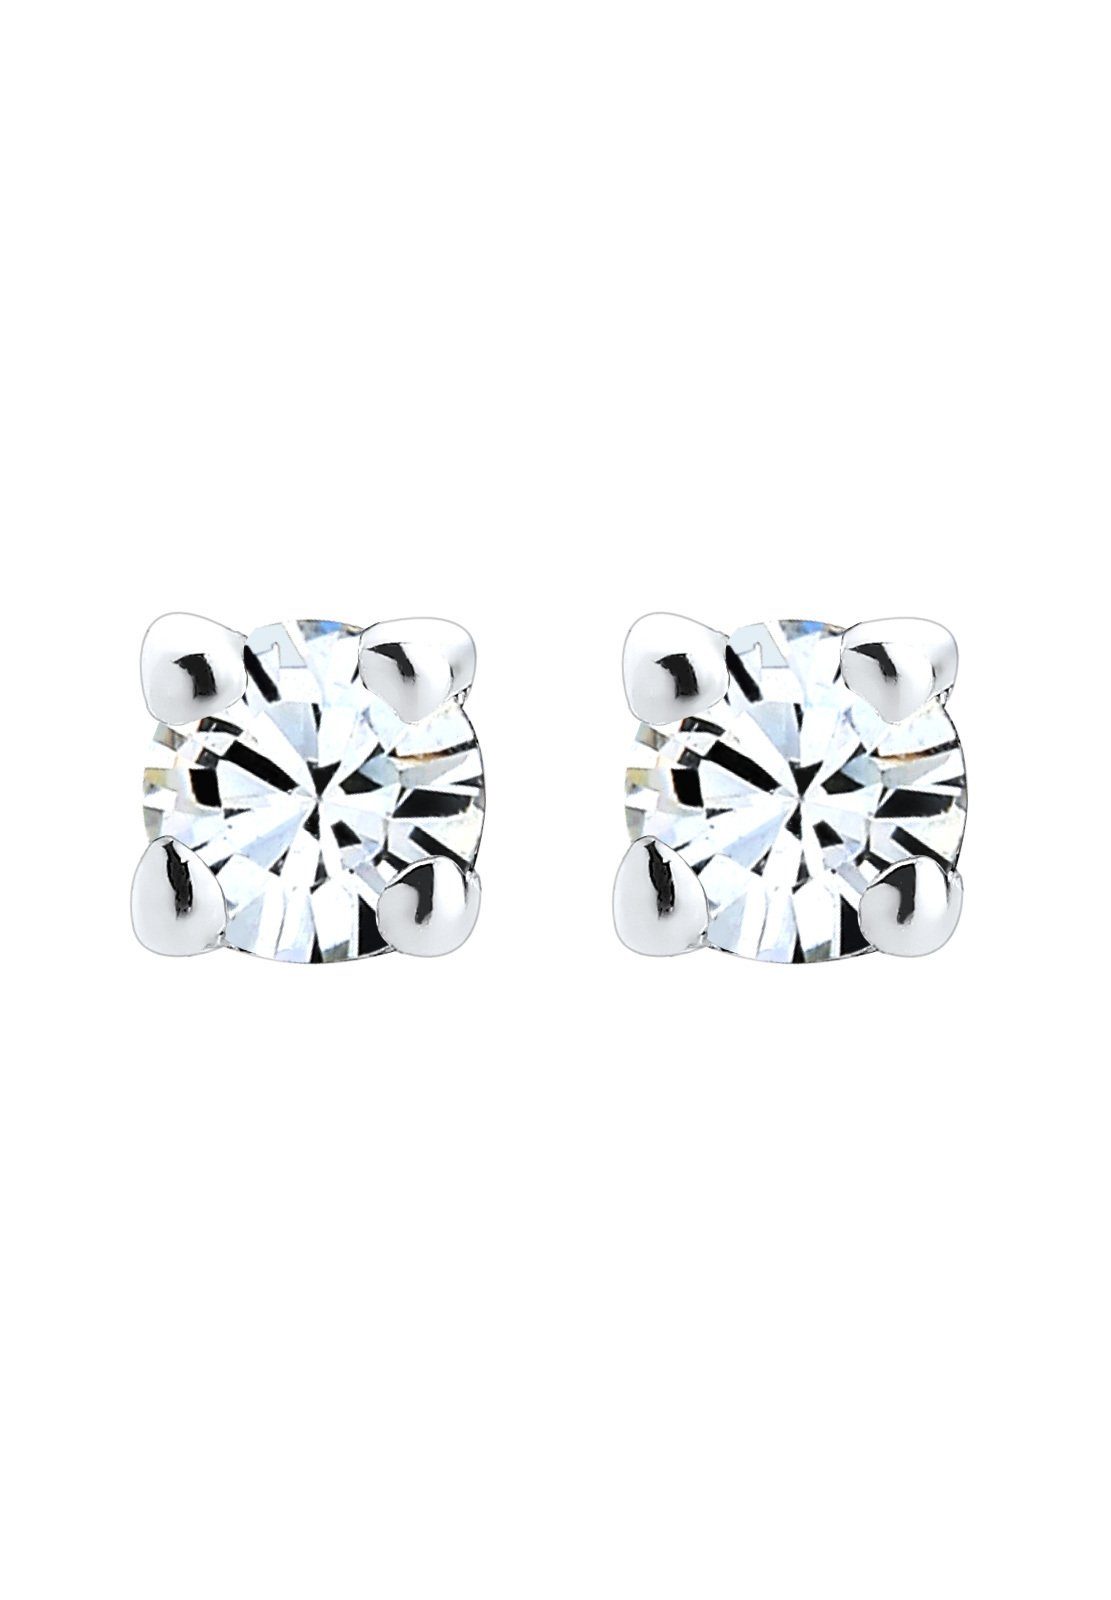 Paar Ohrstecker Kristalle Weiß Basic Silber Elli 925 Funkelnd